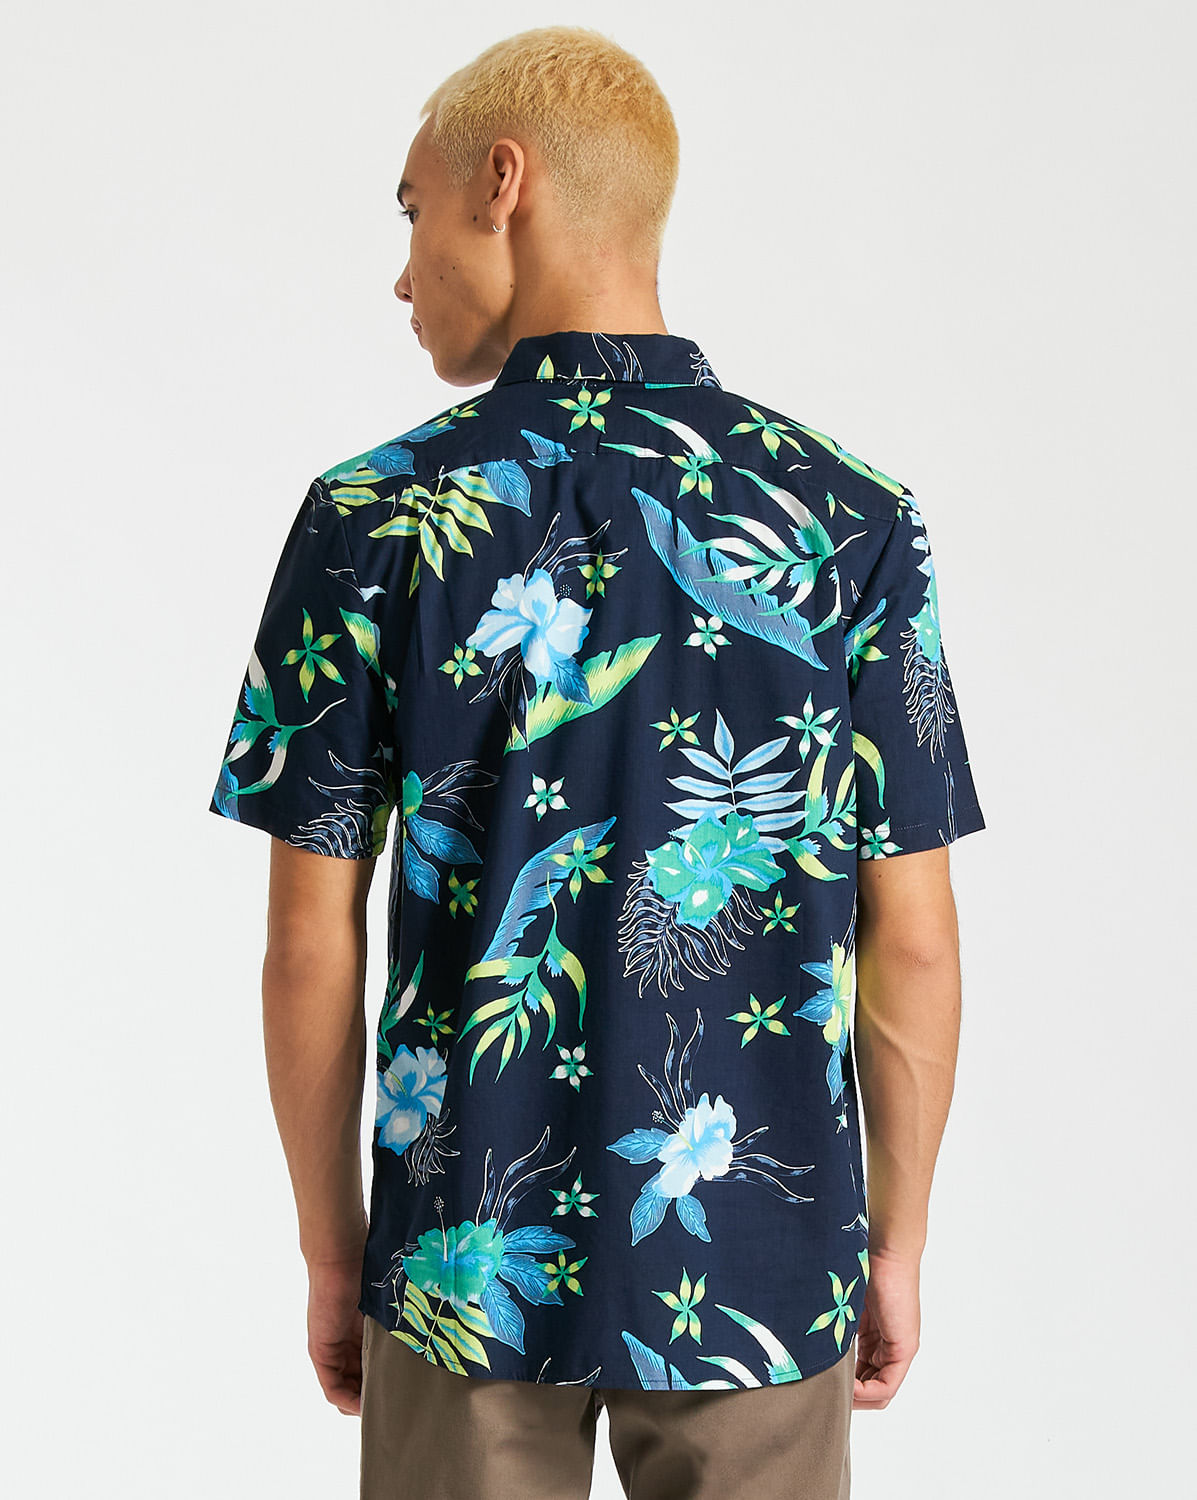 Camisa Volcom Sunriser Floral Short Sleeve Shirt Navy